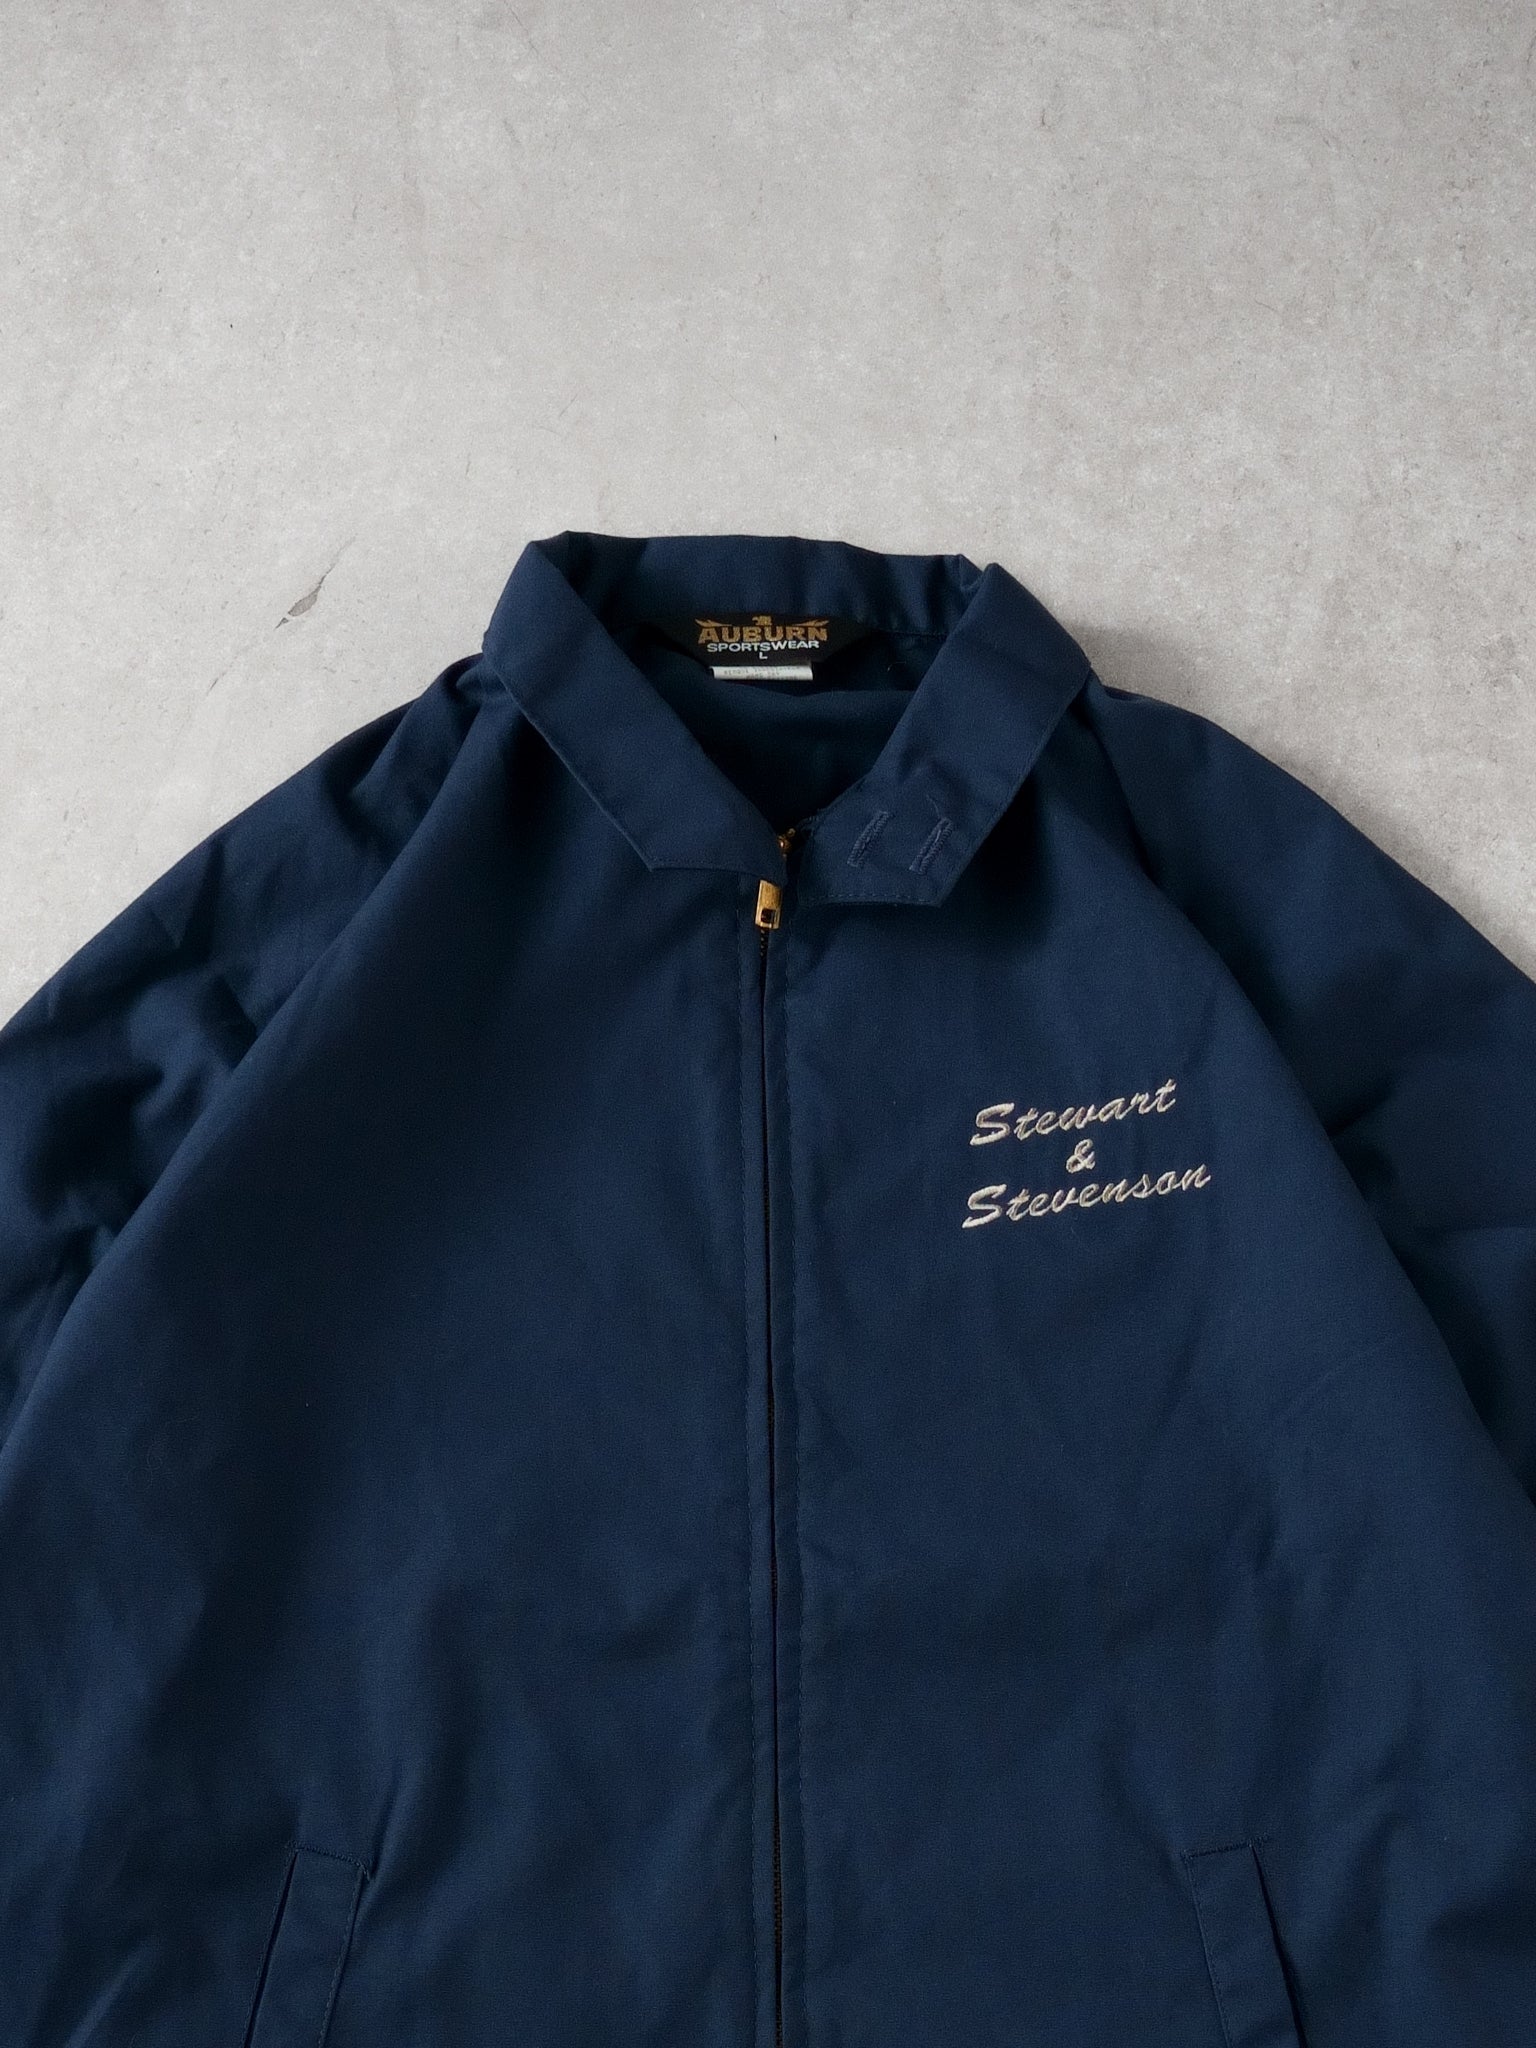 Vintage 90s Navy Blue Stewart & Stevenson Collared Jacket (M)